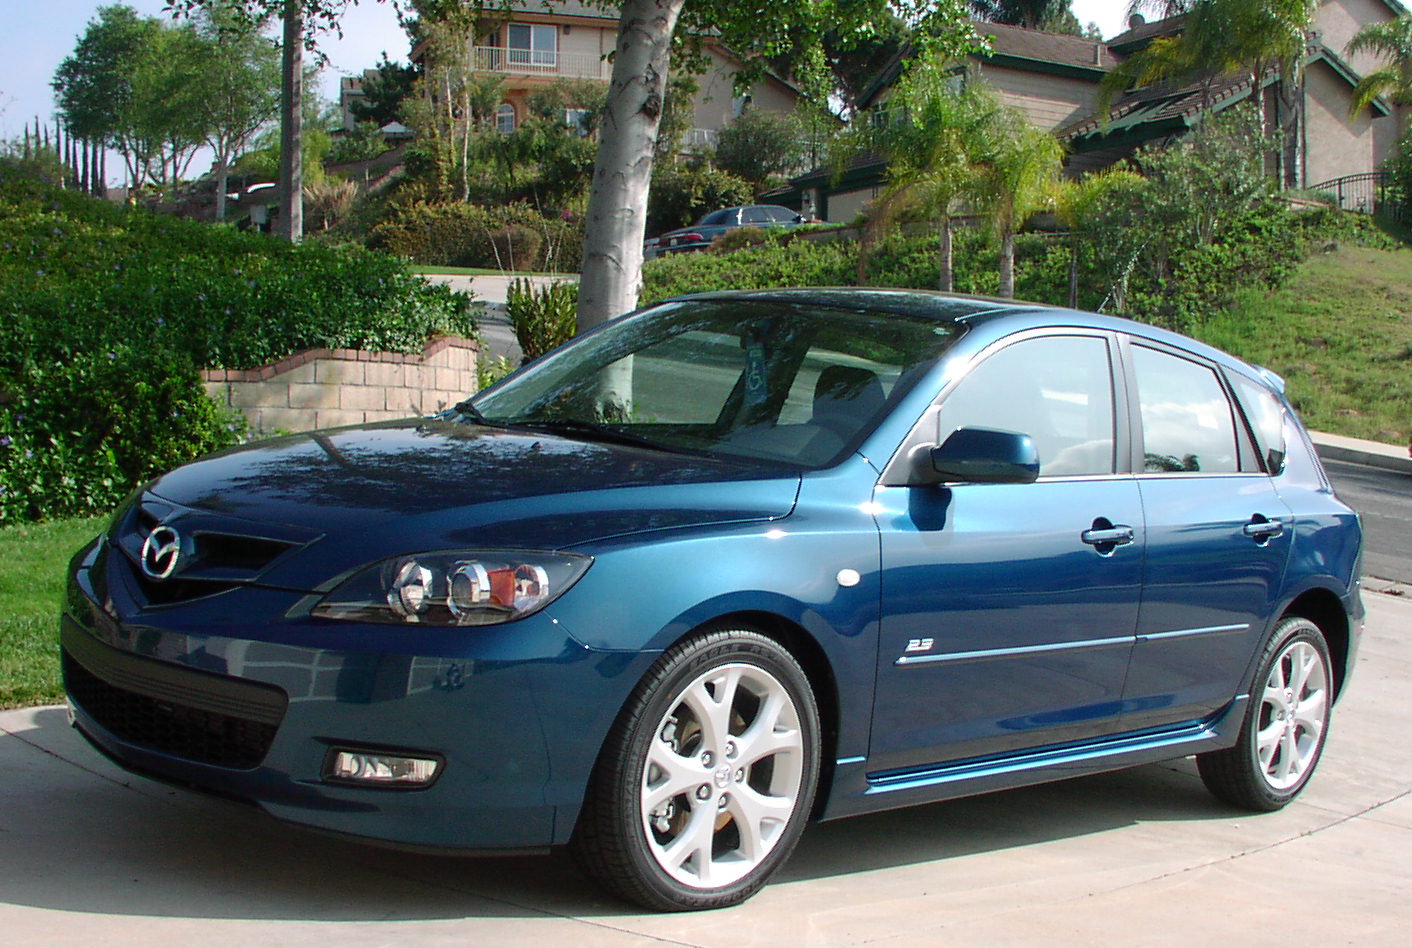 Мазда 3 хэтчбек 2007. Mazda 3 2007. Mazda 3 Hatchback 2007. Мазда 3 2007 хэтчбек 1.6. Мазда 3 седан 2007.